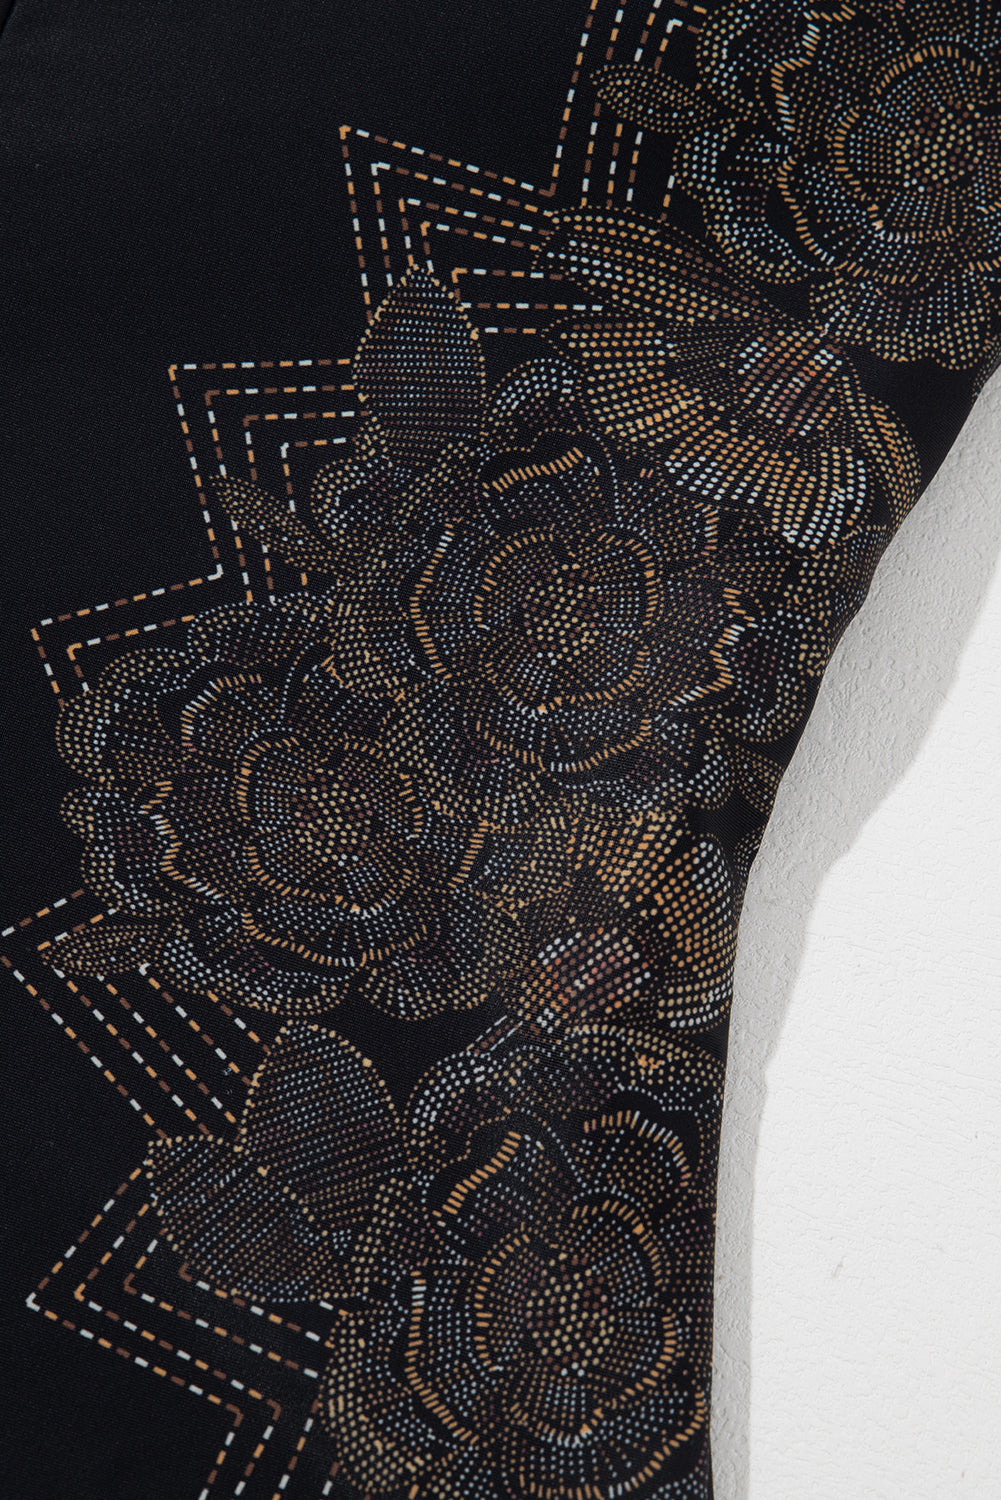 Schwarzer Badeanzug mit überkreuzten Spaghettiträgern und Blütenblattmuster am Rücken